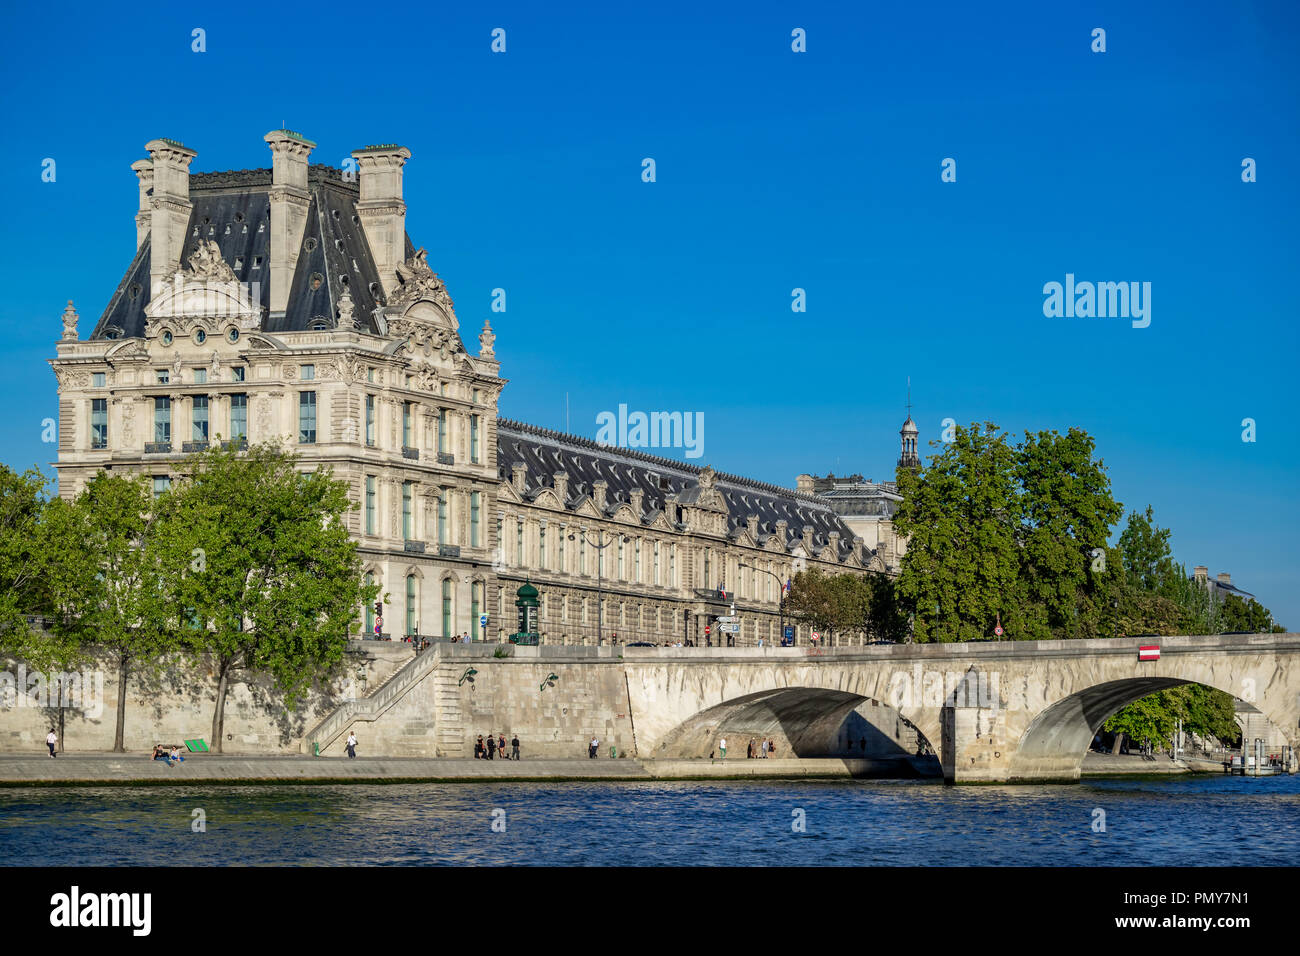 The Louvre, Pavillon de Flore, and Pont Royal bridge over the river Seine, Paris, France Stock Photo